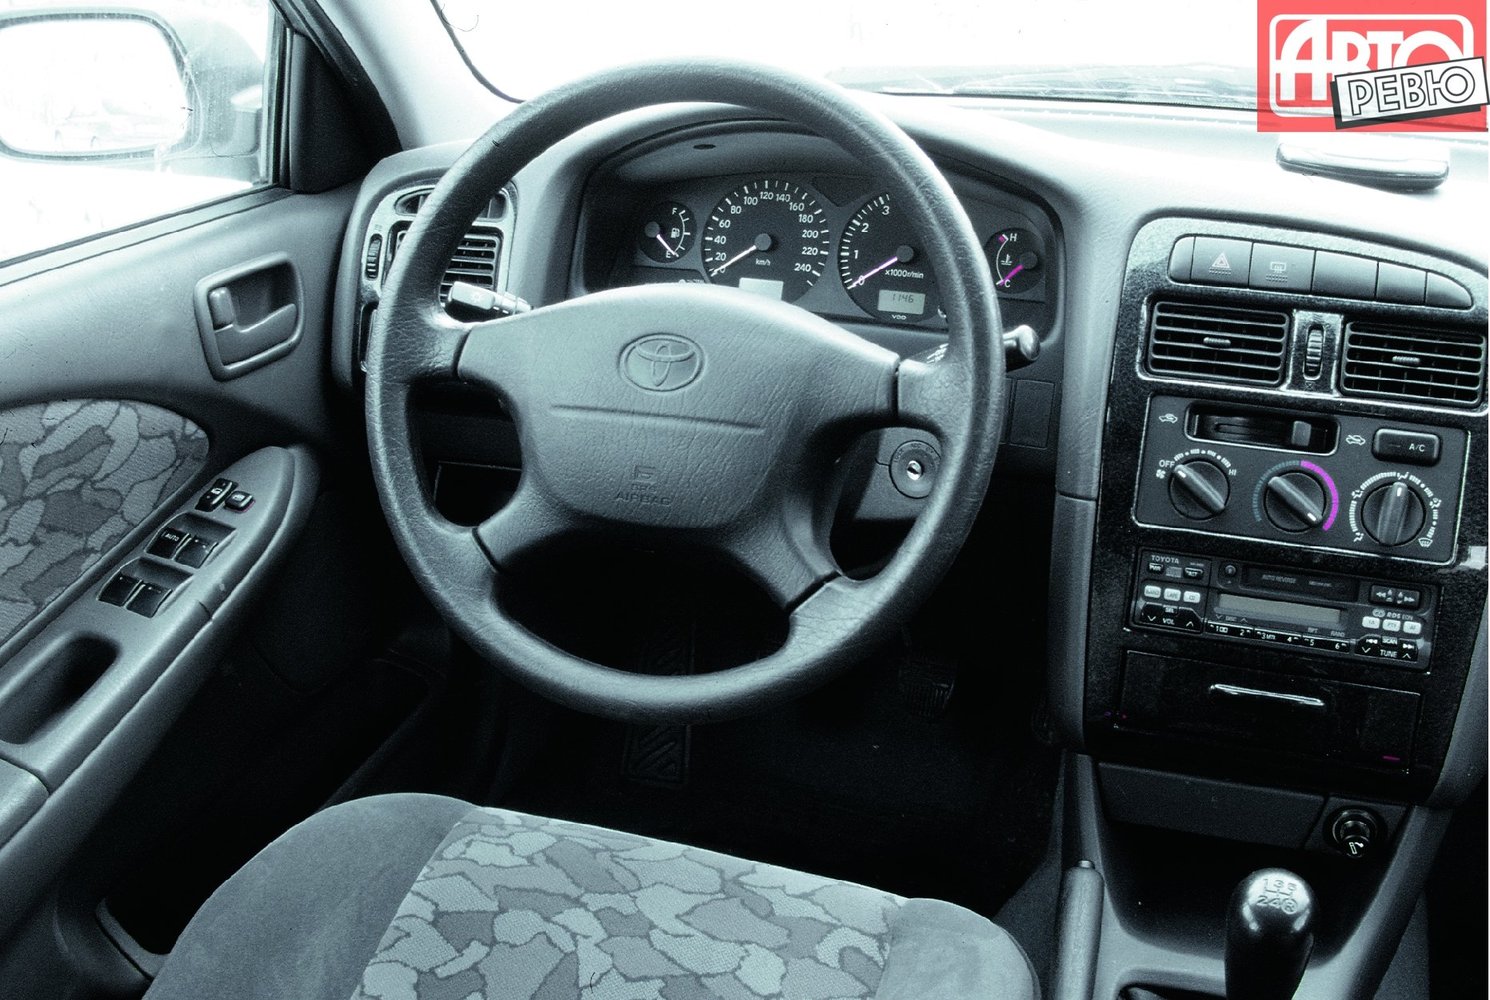 универсал Toyota Avensis 1997 - 2000г выпуска модификация 1.6 MT (101 л.с.)